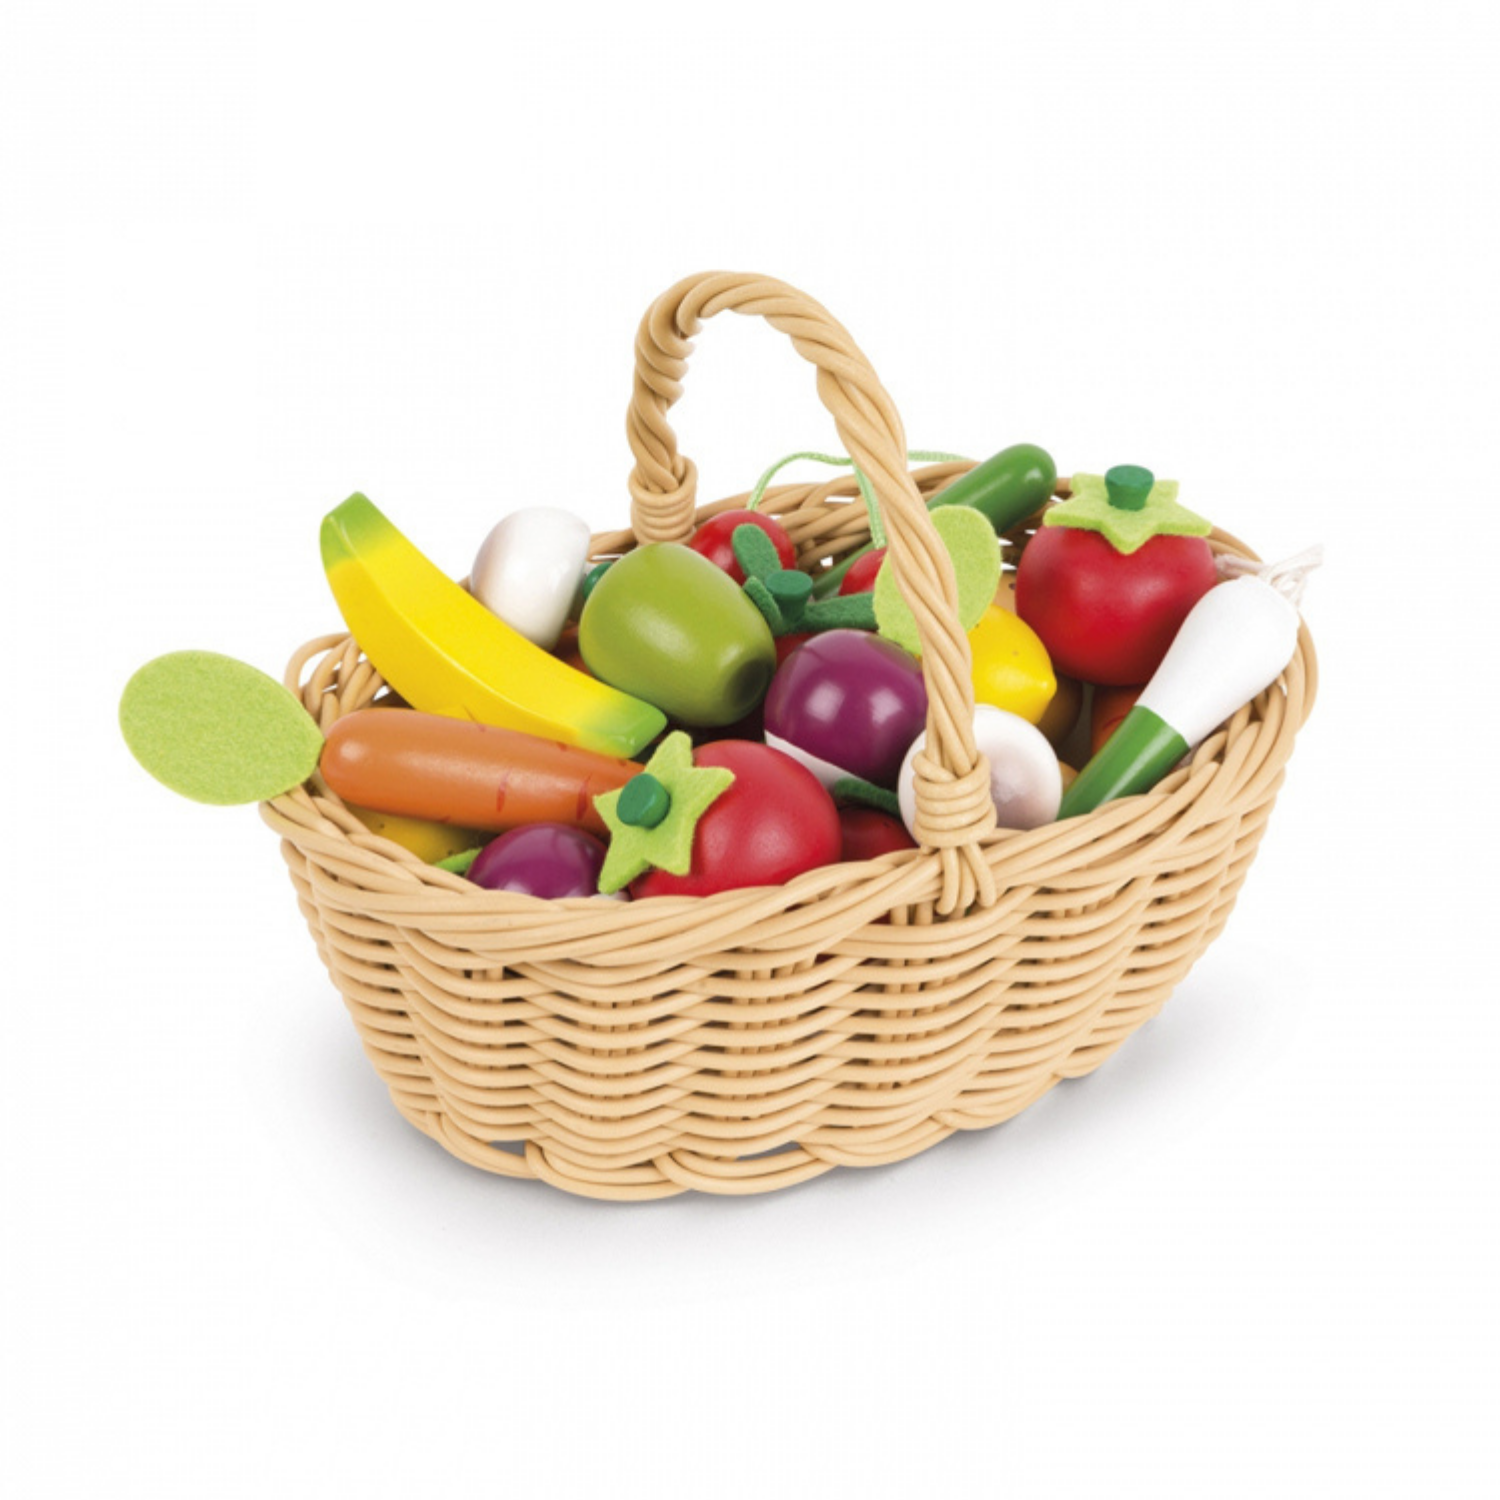 Janod Fruits and Vegetables Basket